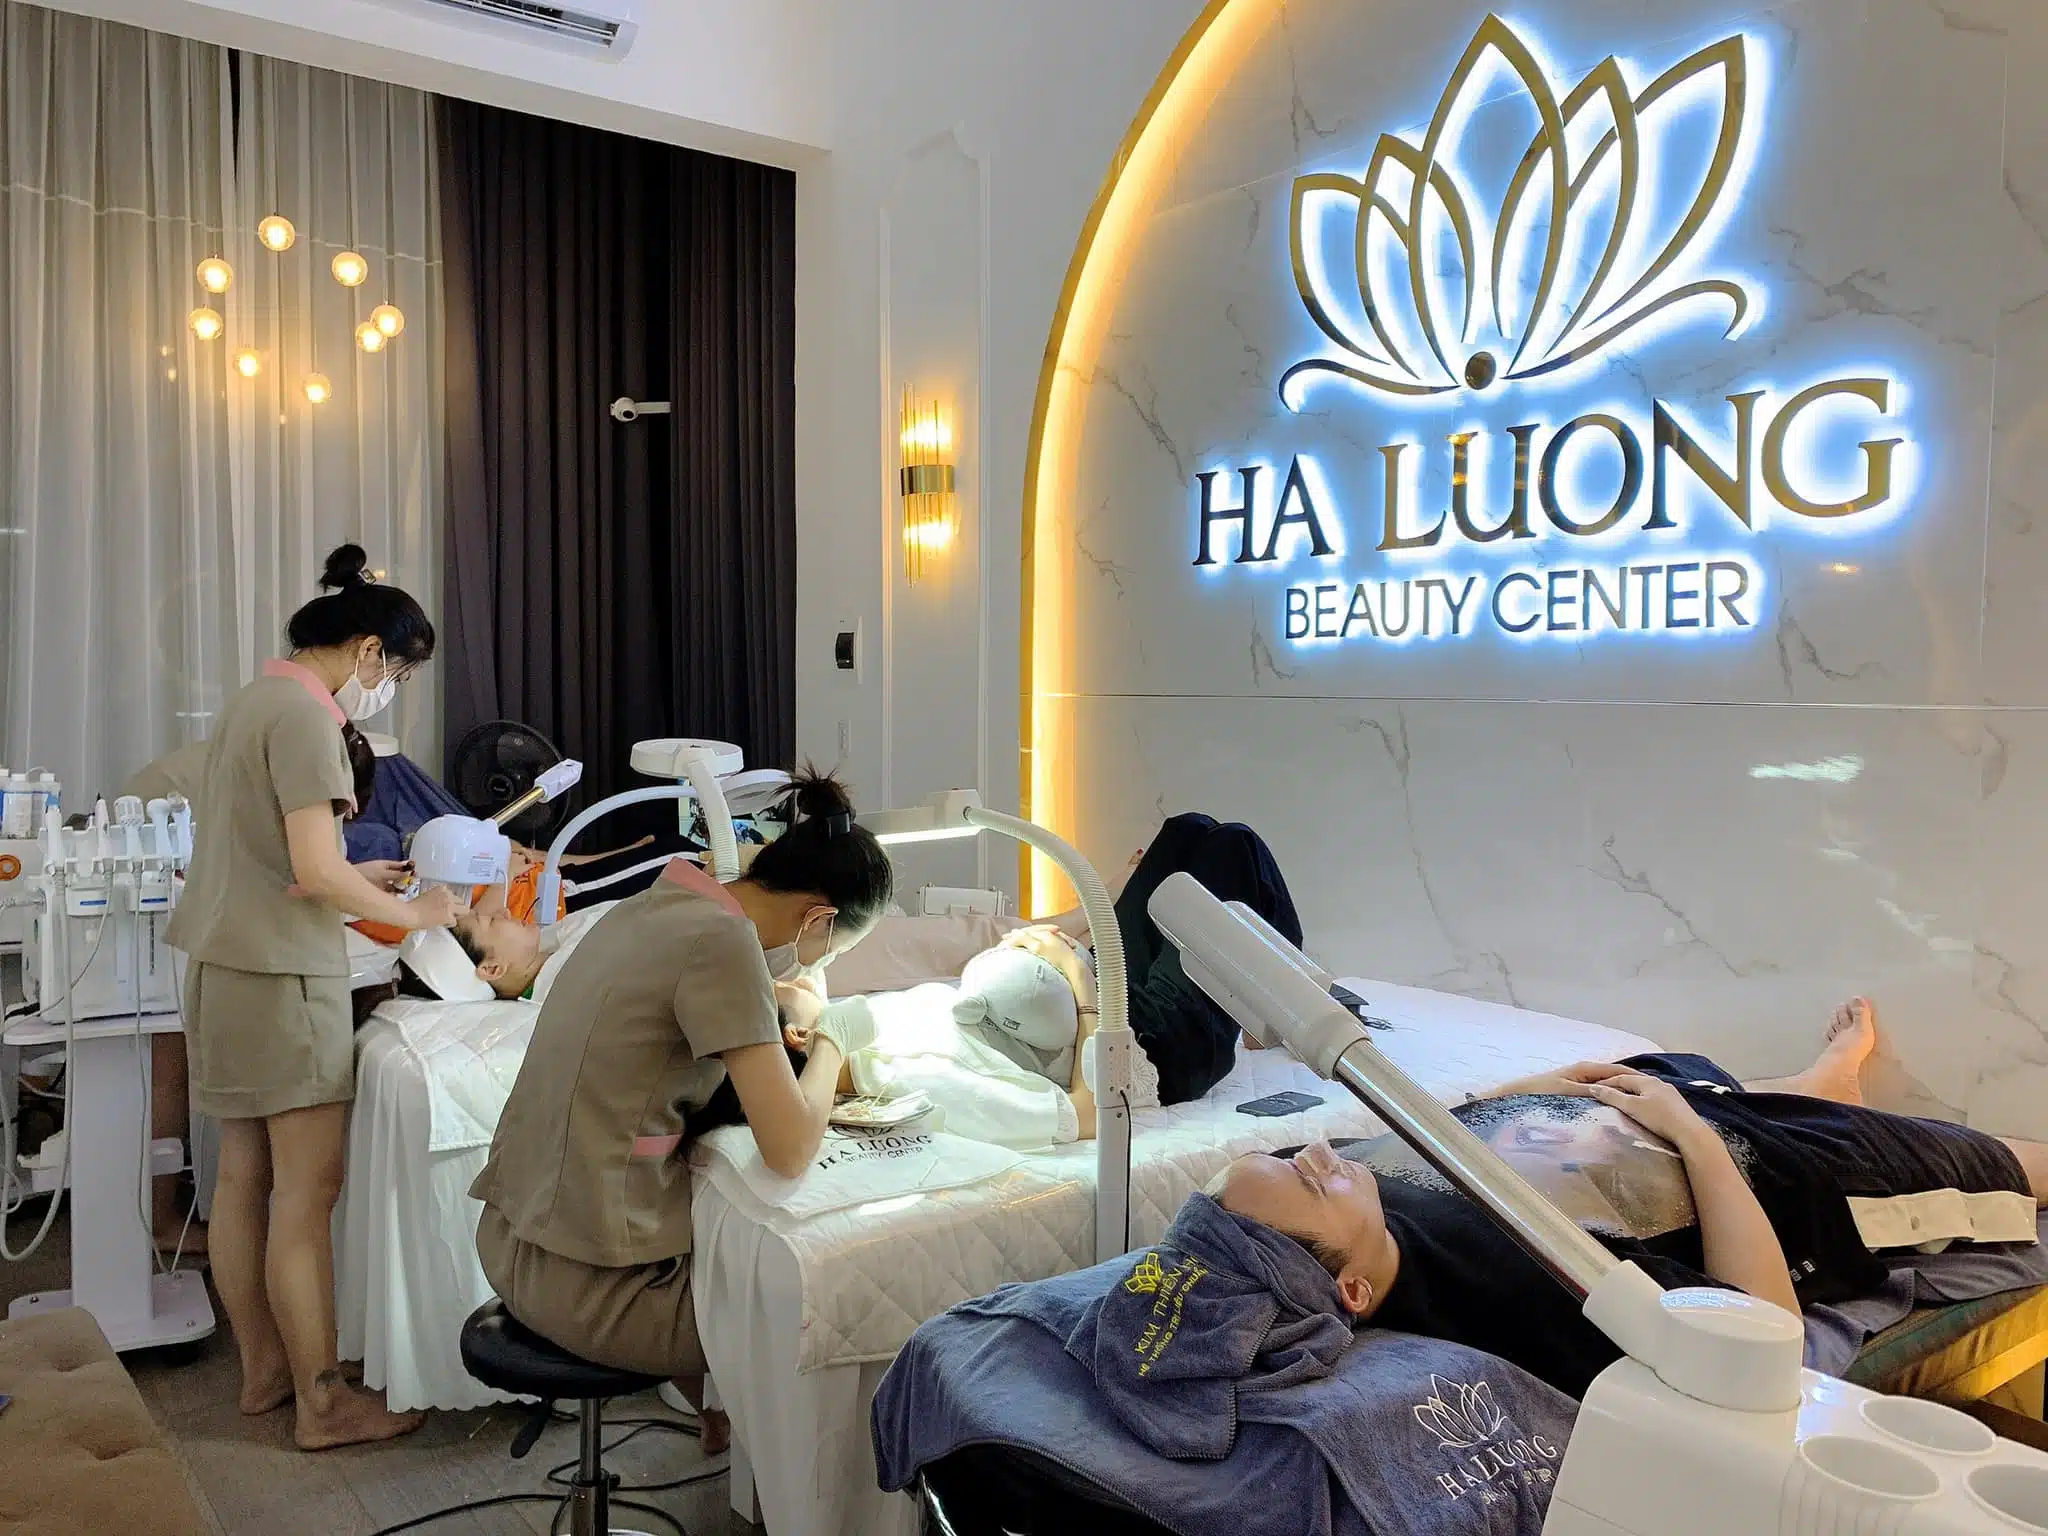 Ha Luong Beauty Center là địa điểm đào tạo nghề spa nổi tiếng tại Hải Dương